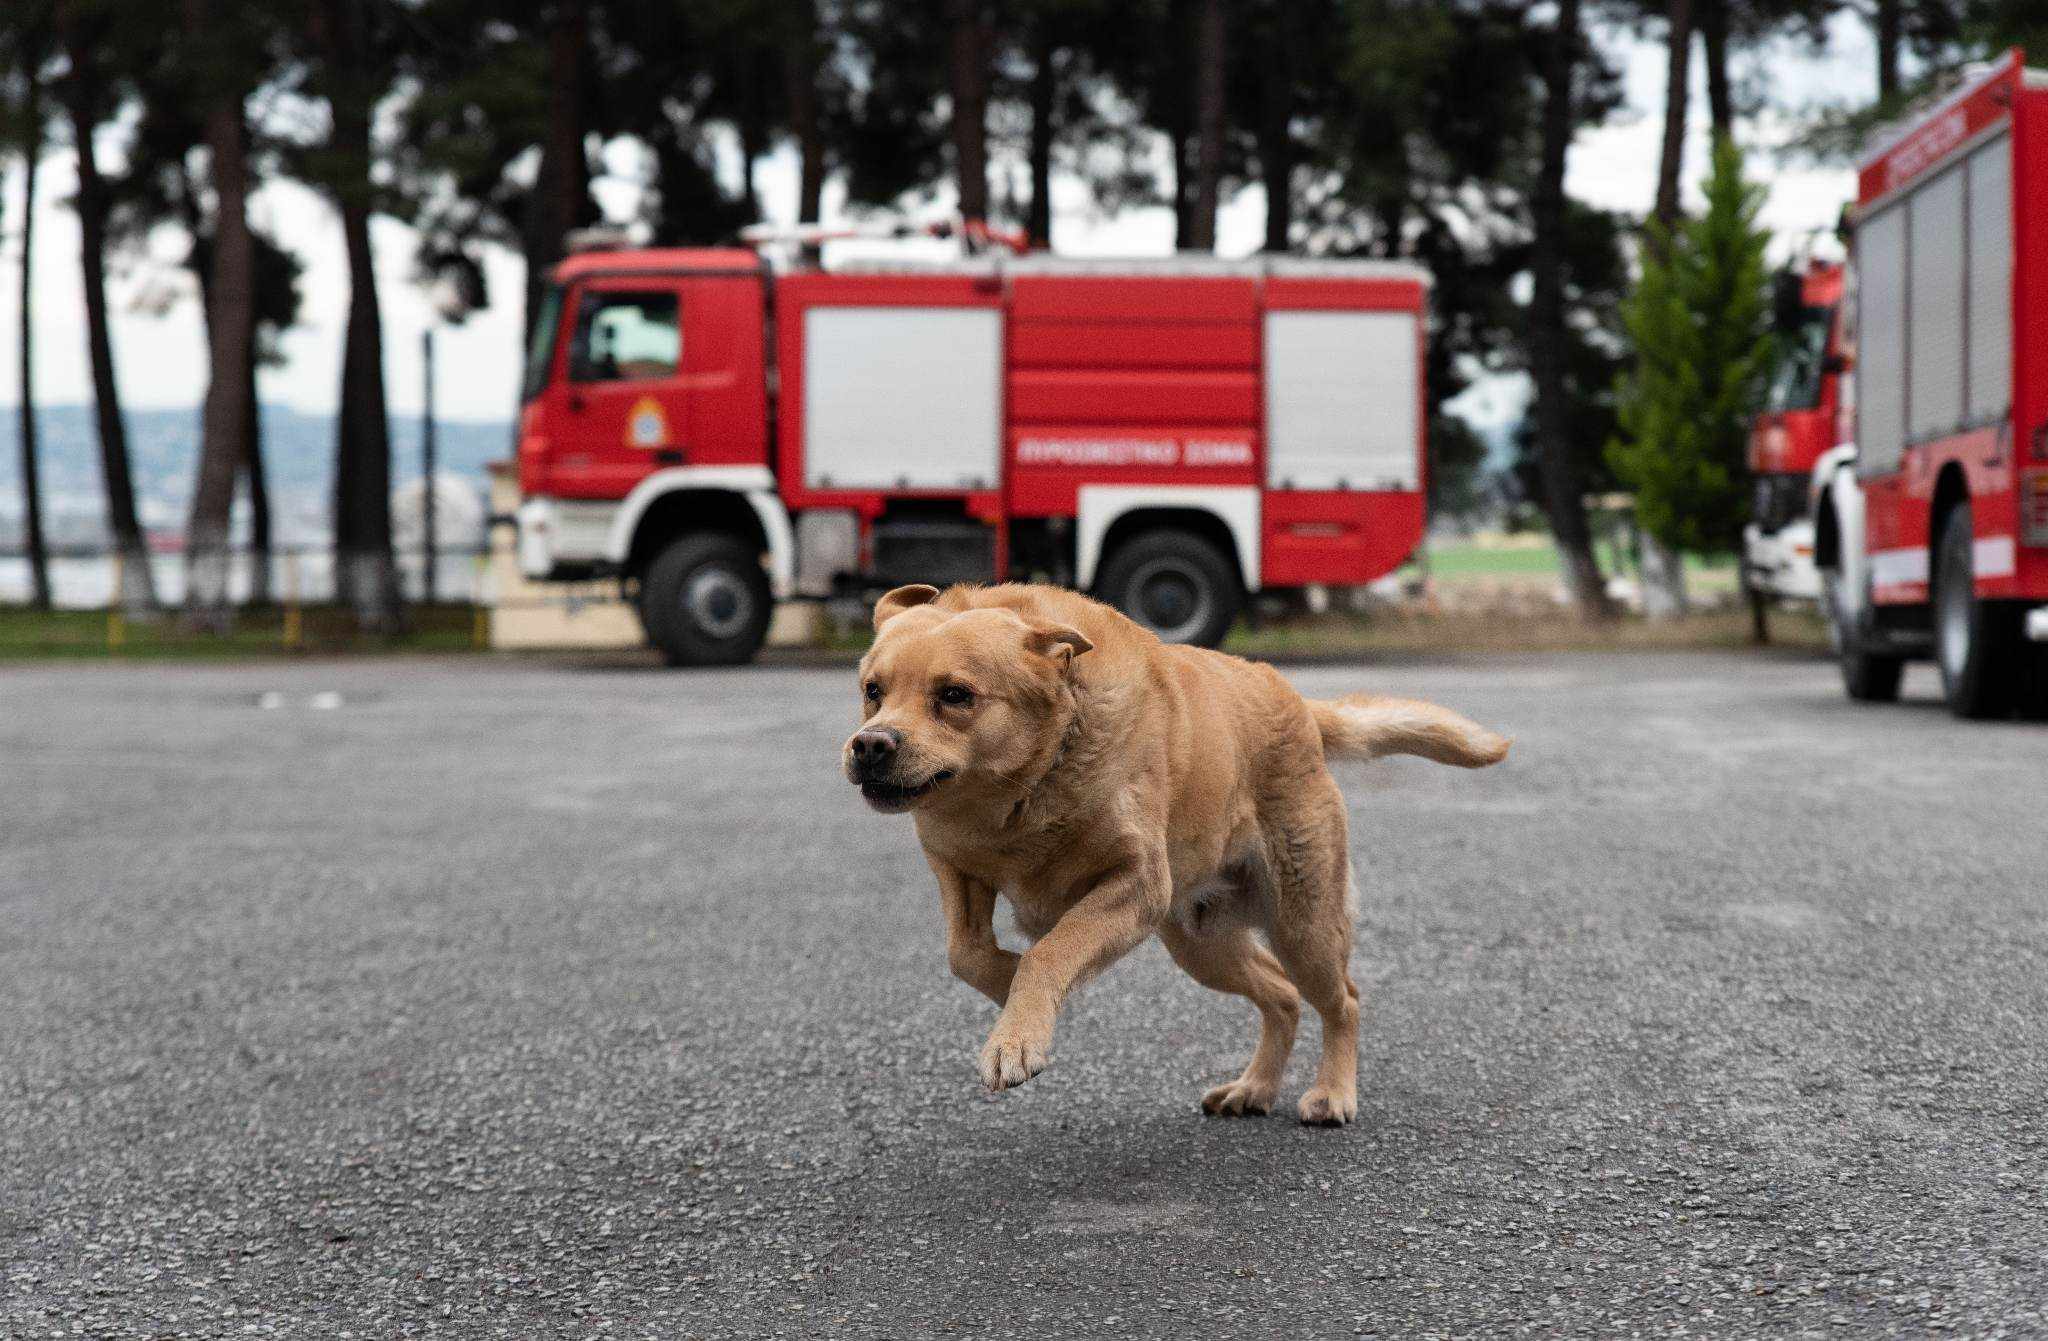 Παγκόσμια Ημέρα Σκύλου: Το «ευχαριστώ» από την Πυροσβεστική στους τετράποδους συναδέλφους της